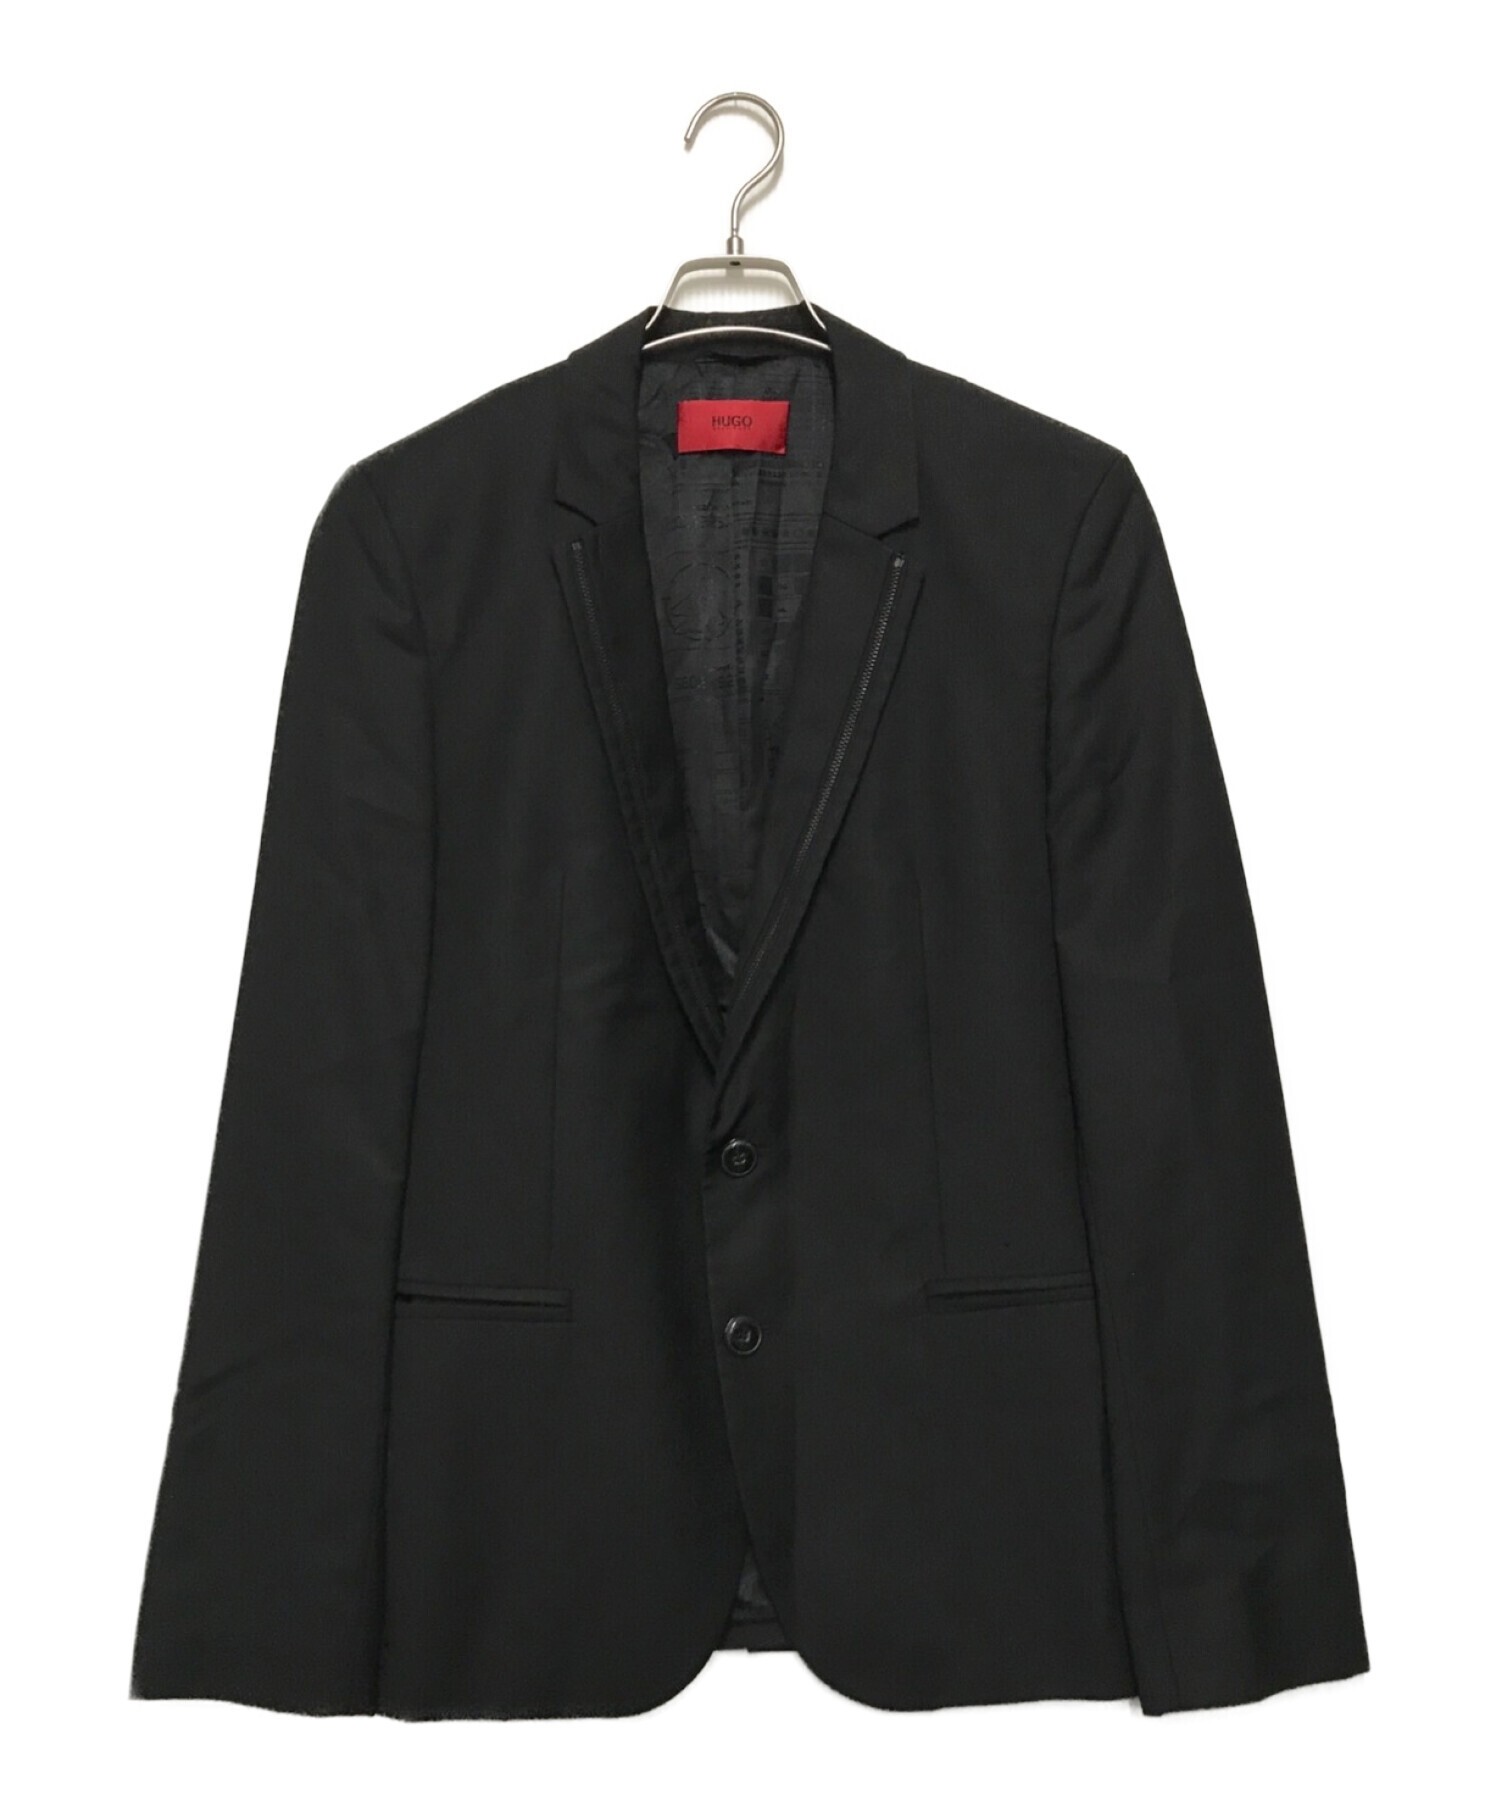 HUGO BOSS (ヒューゴ ボス) ジップデザインテーラードジャケット ブラック サイズ:46